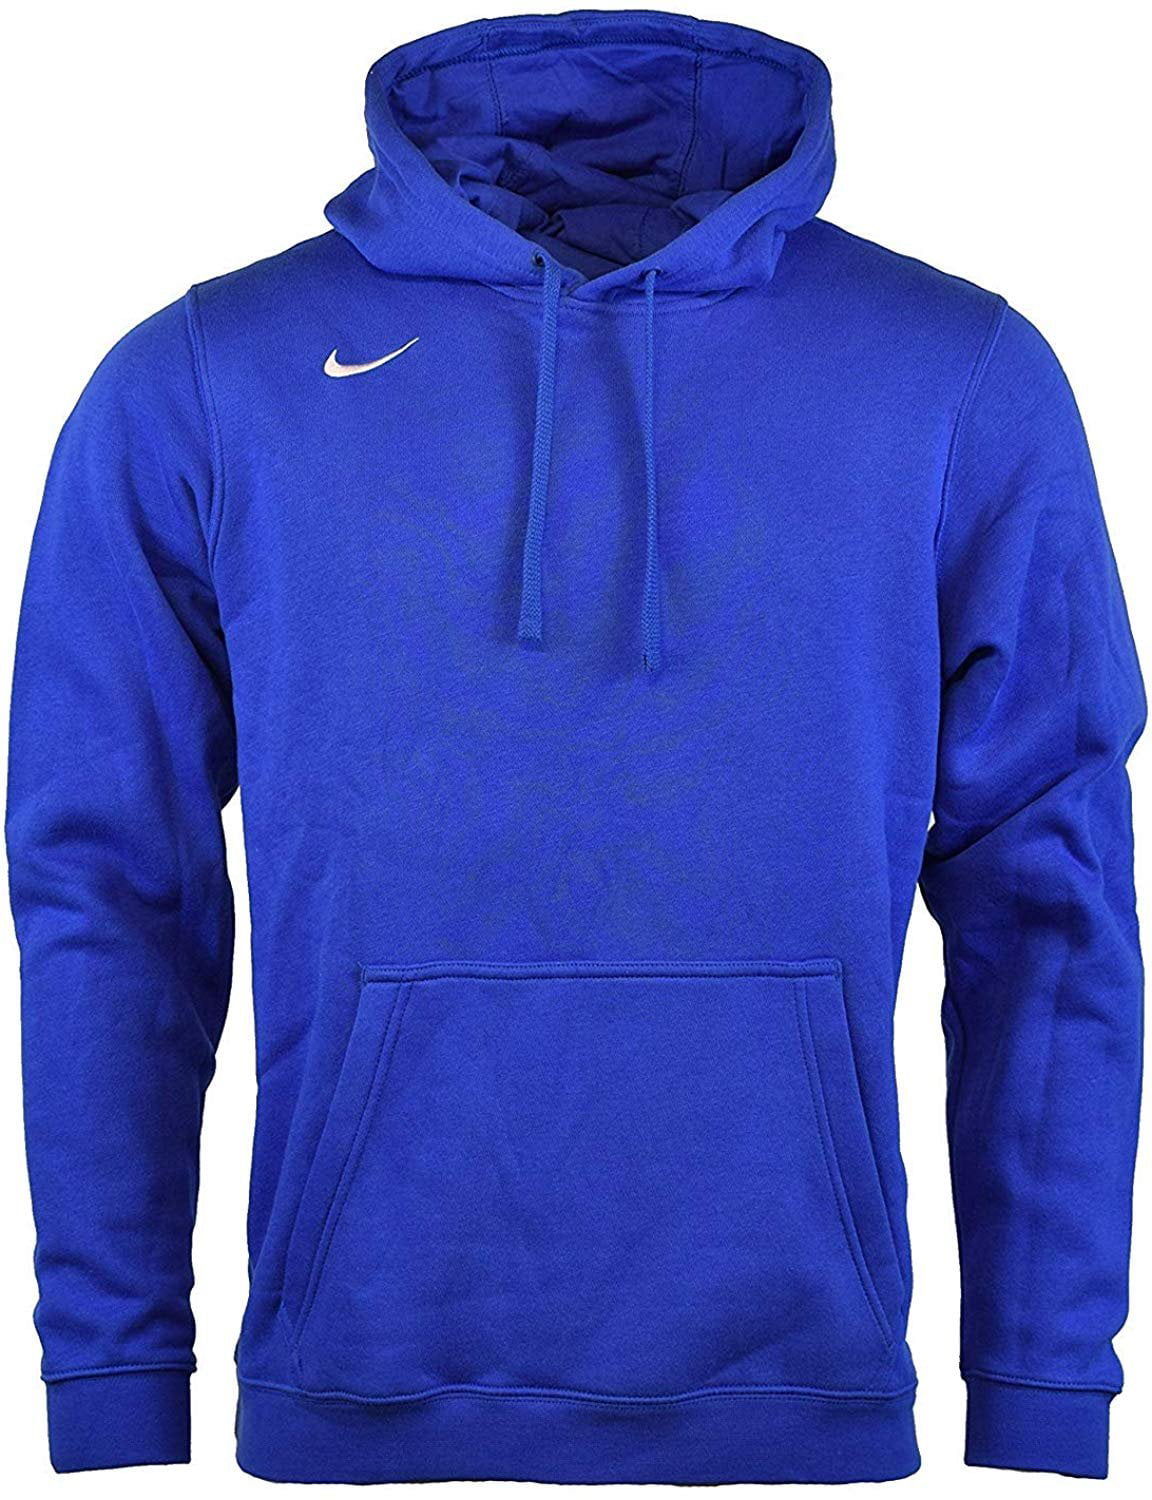 Voorwoord Boer Previs site Nike Men's Pullover Fleece Club Hoodie XX-Large, Varsity Royal - Walmart.com